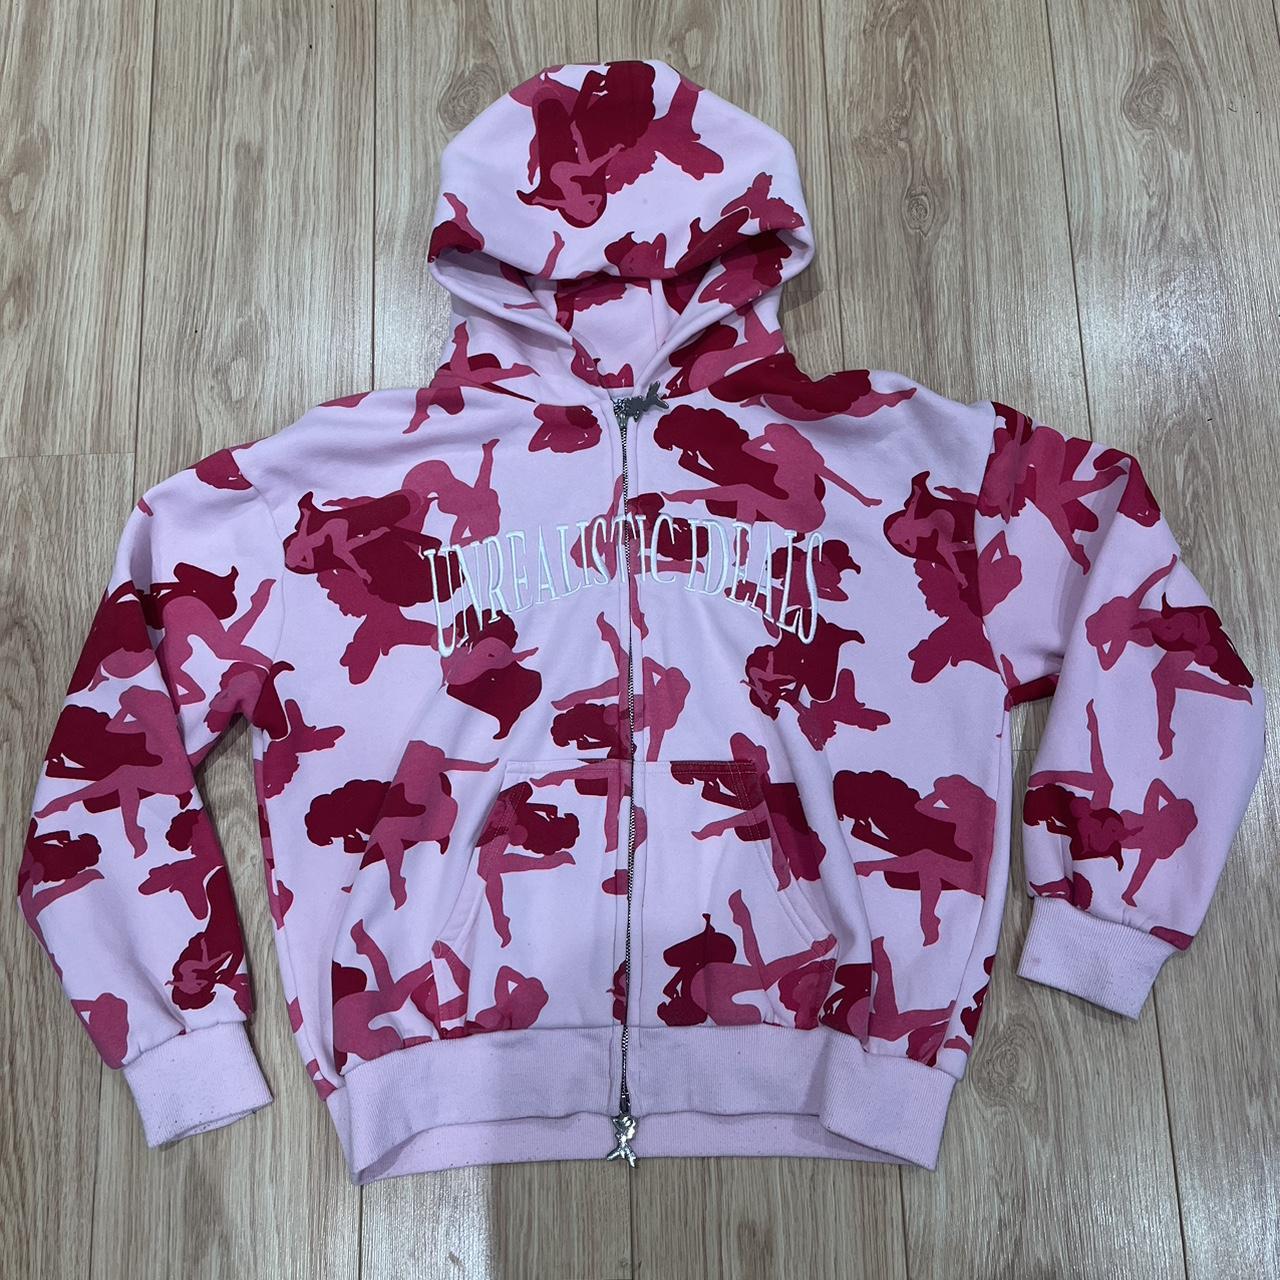 pink named collective camo hoodie - Depop